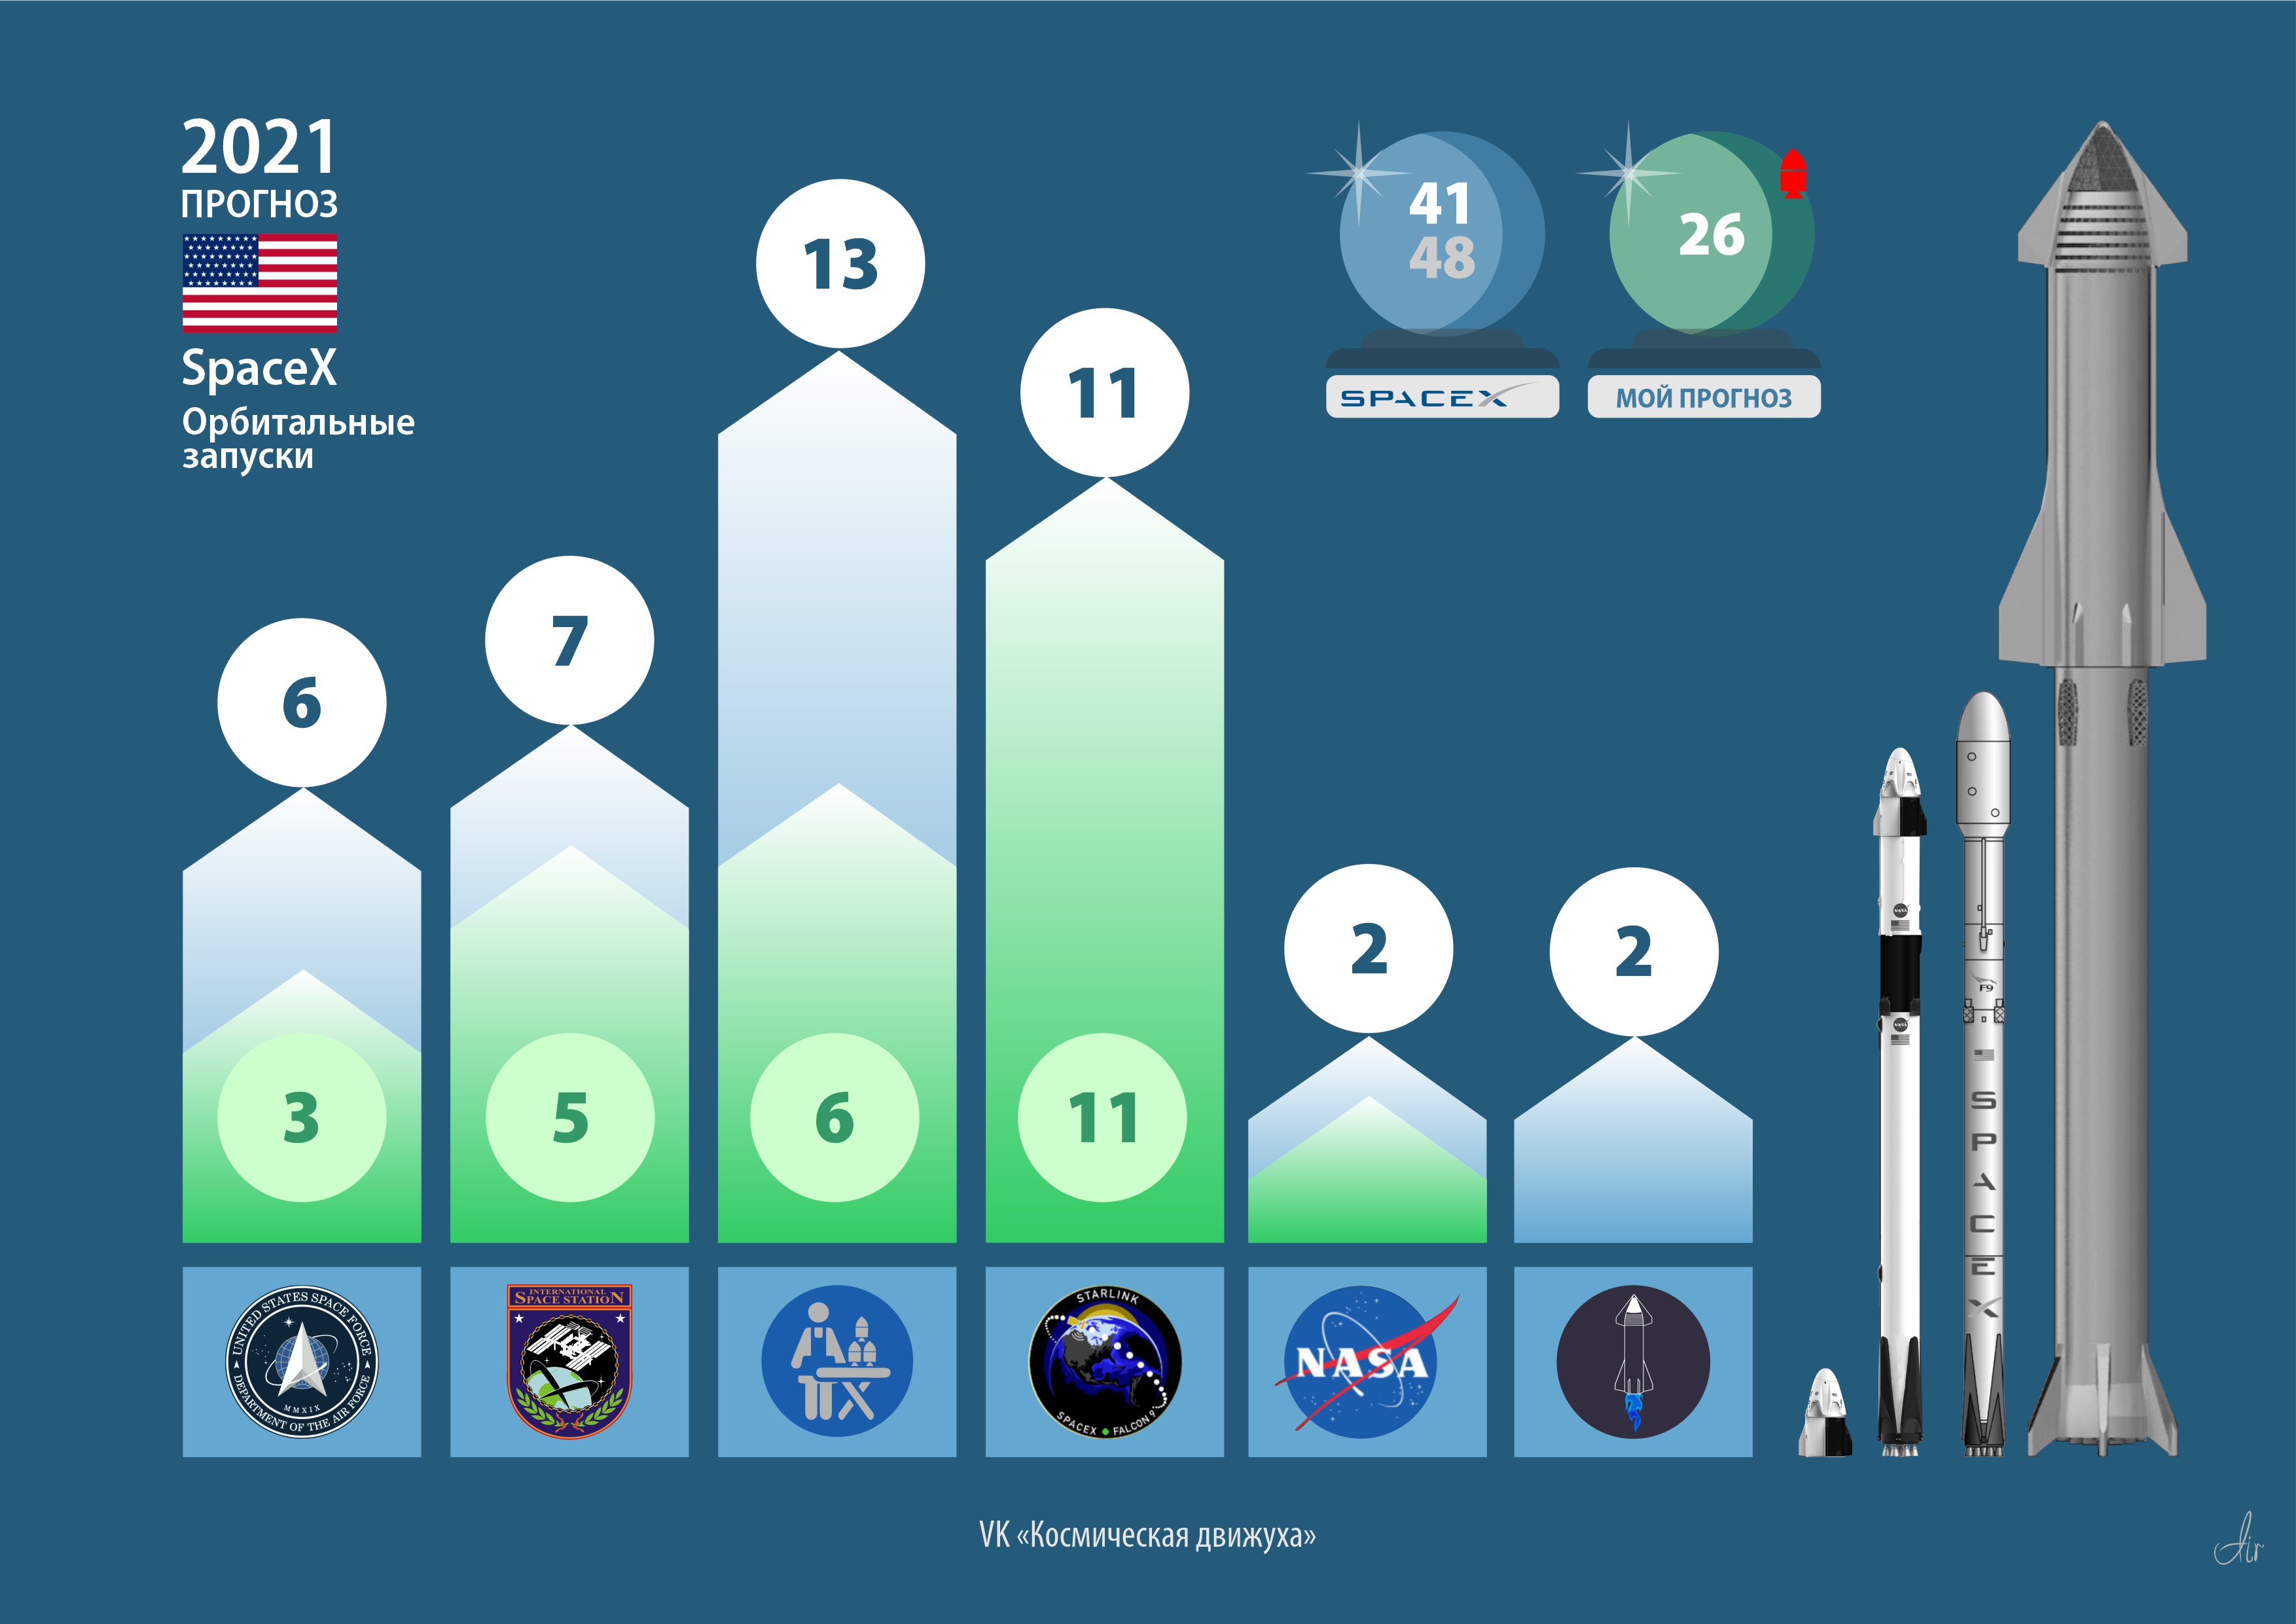 Ожидания и мой прогноз орбитальных запусков от SpaceX на 2021 год. Основной вклад в американскую пусковую программу. Выделена отдельно как наиболее интересная и активная пусковая компания мира.